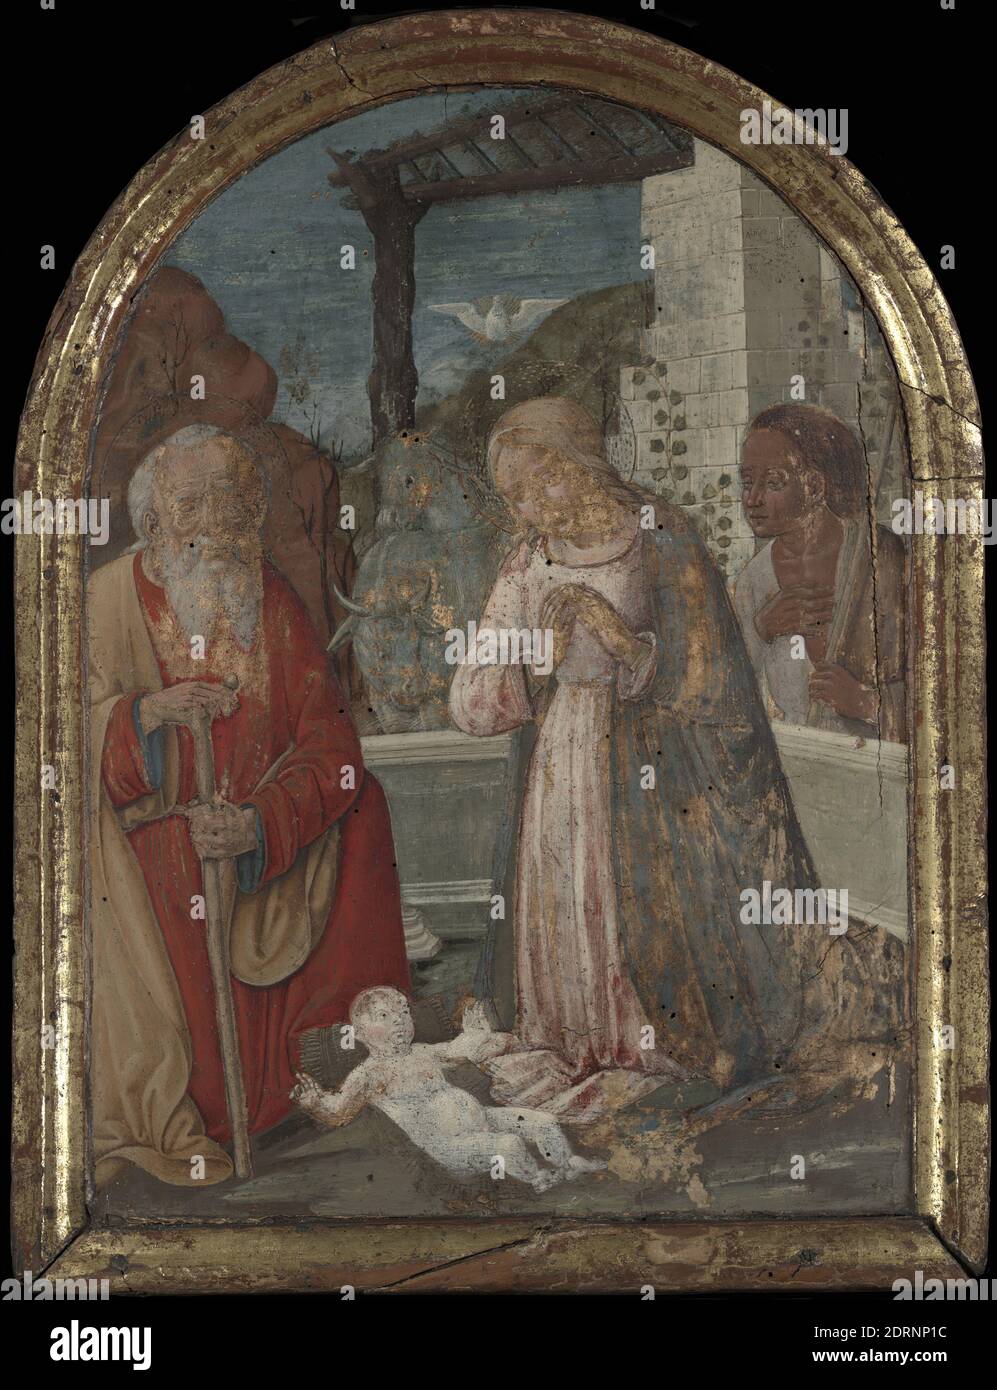 Artist: Girolamo di Benvenuto, Italian, Siena, 1470–1524, The Nativity, ca. 1510, Egg tempera on panel, 59.7 × 45.4 × 4.4 cm (23 1/2 × 17 7/8 × 1 3/4 in.), Made in Siena, Italy, Italian, Siena, 16th century, Paintings Stock Photo